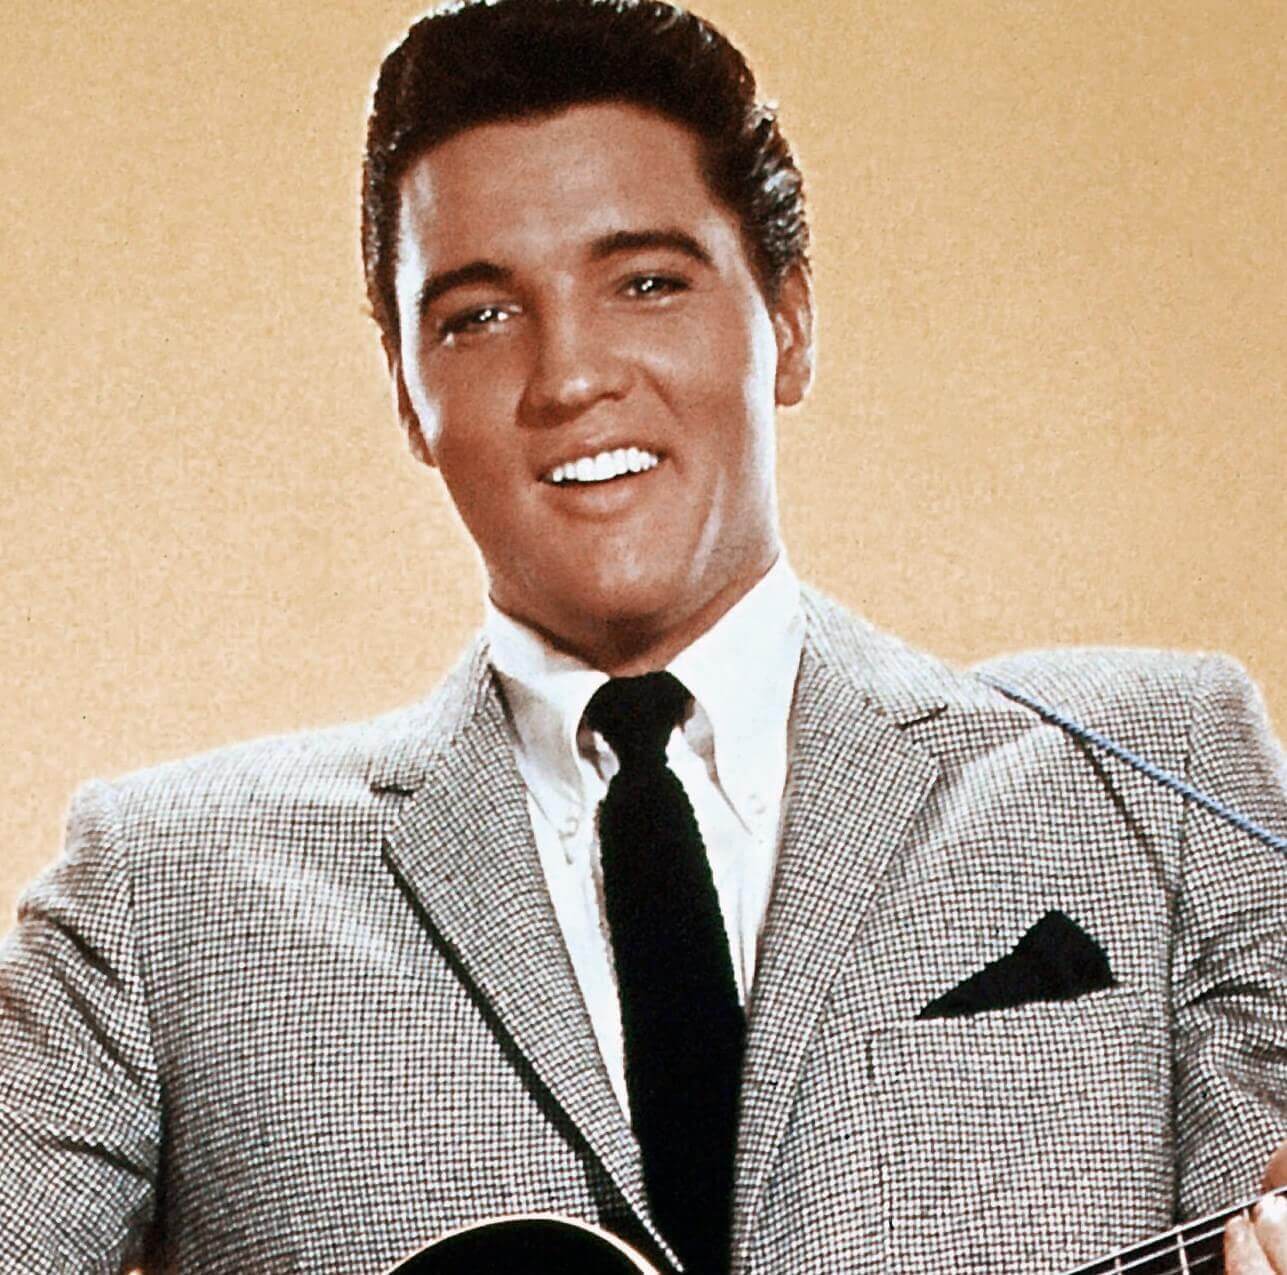 "A Little Less Conversation" singer Elvis Presley wearing a suit